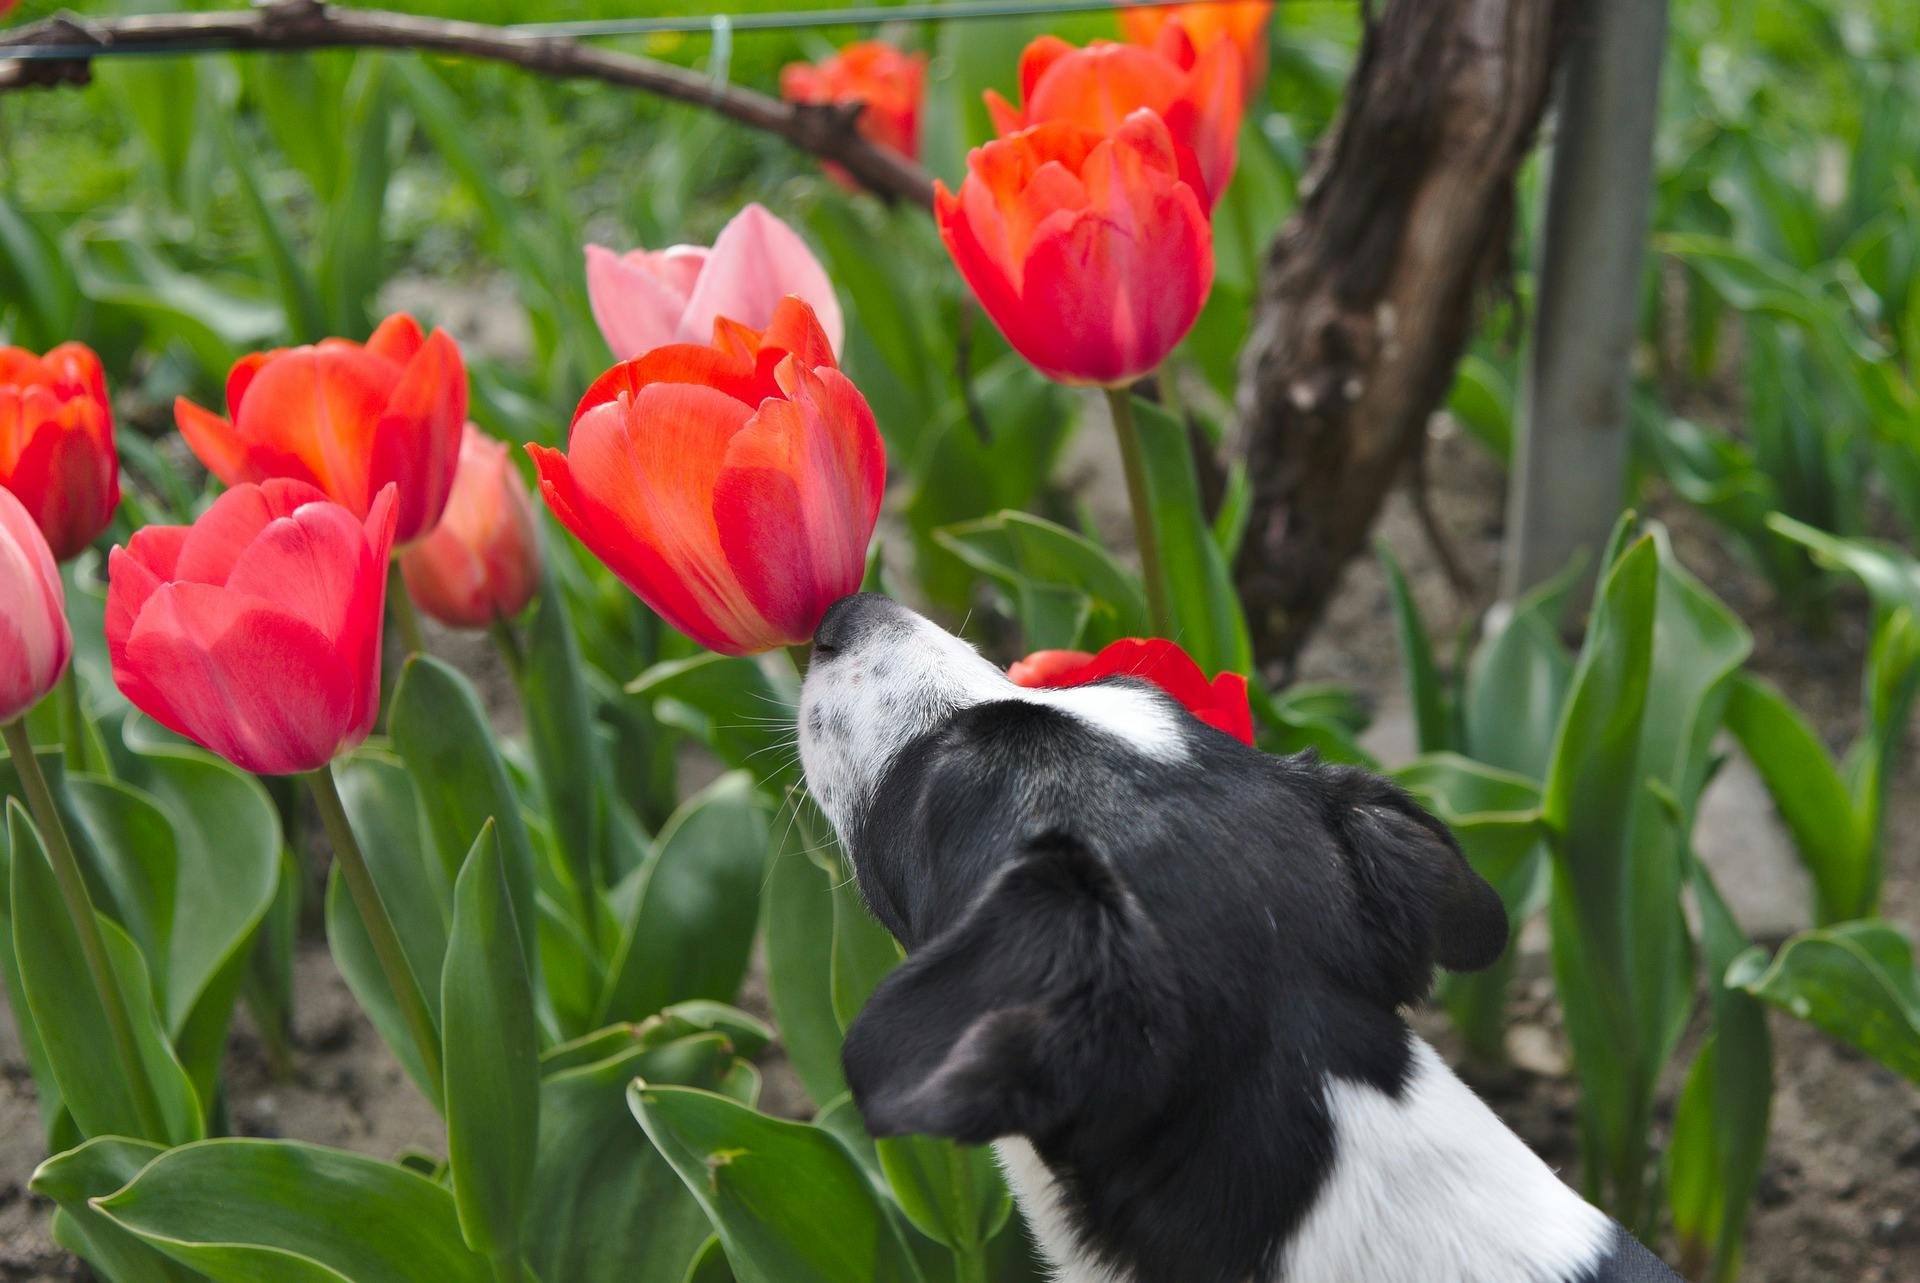 Dog smelling red tulip flower